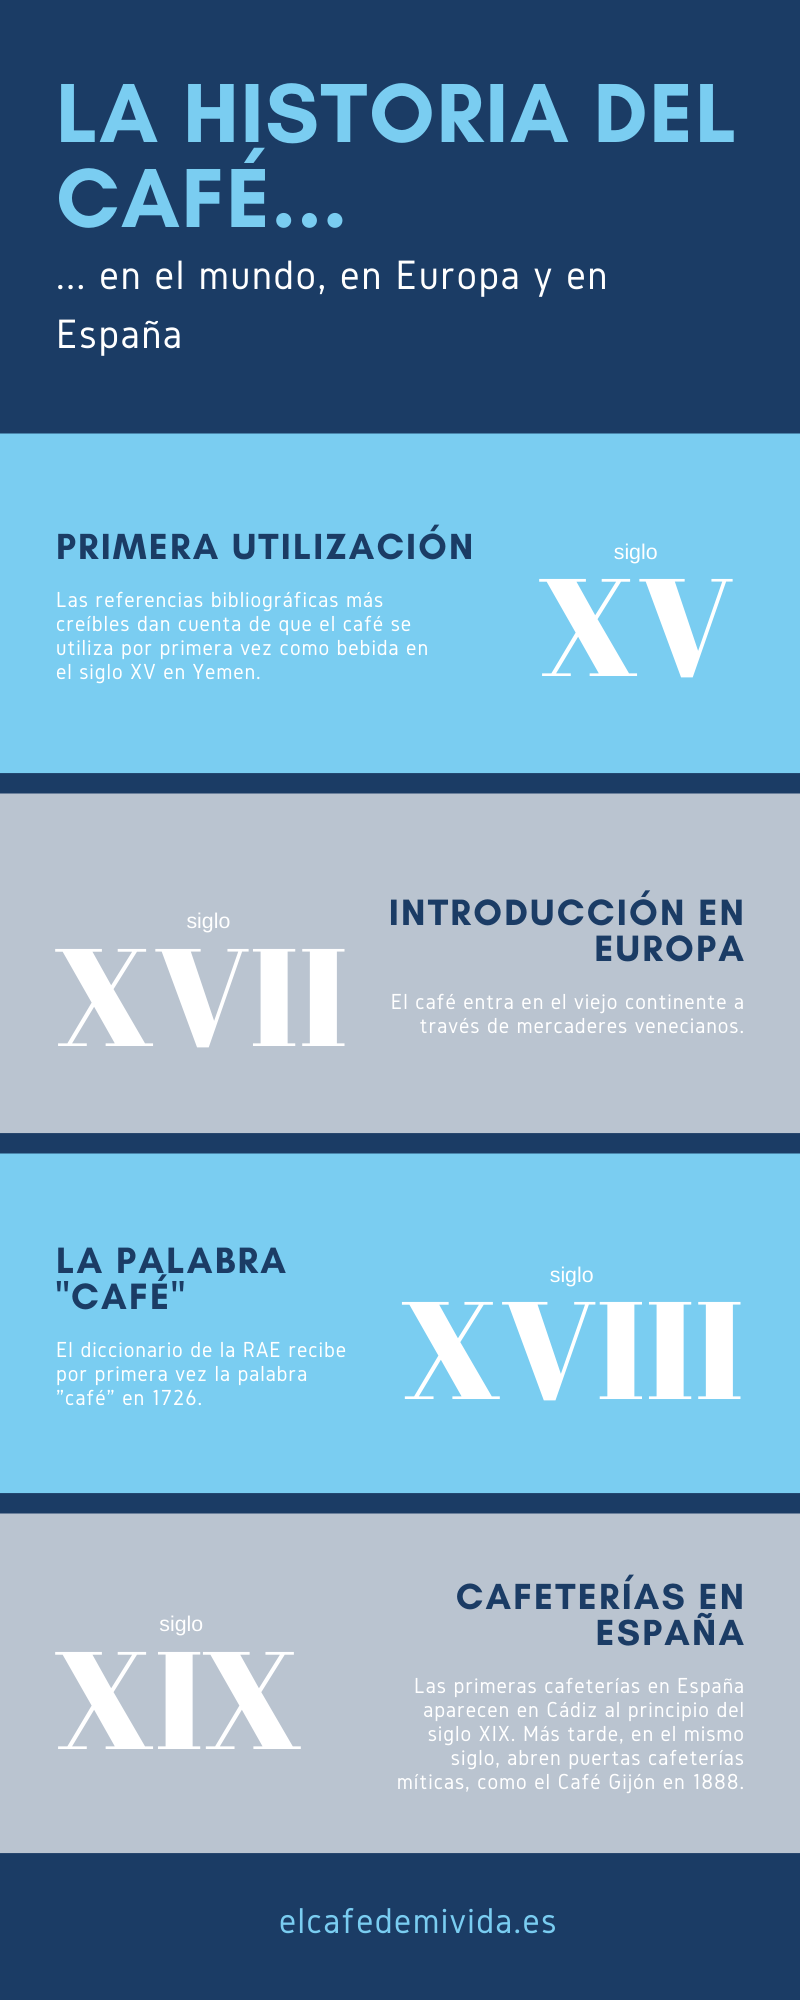 La historia del café - infografía